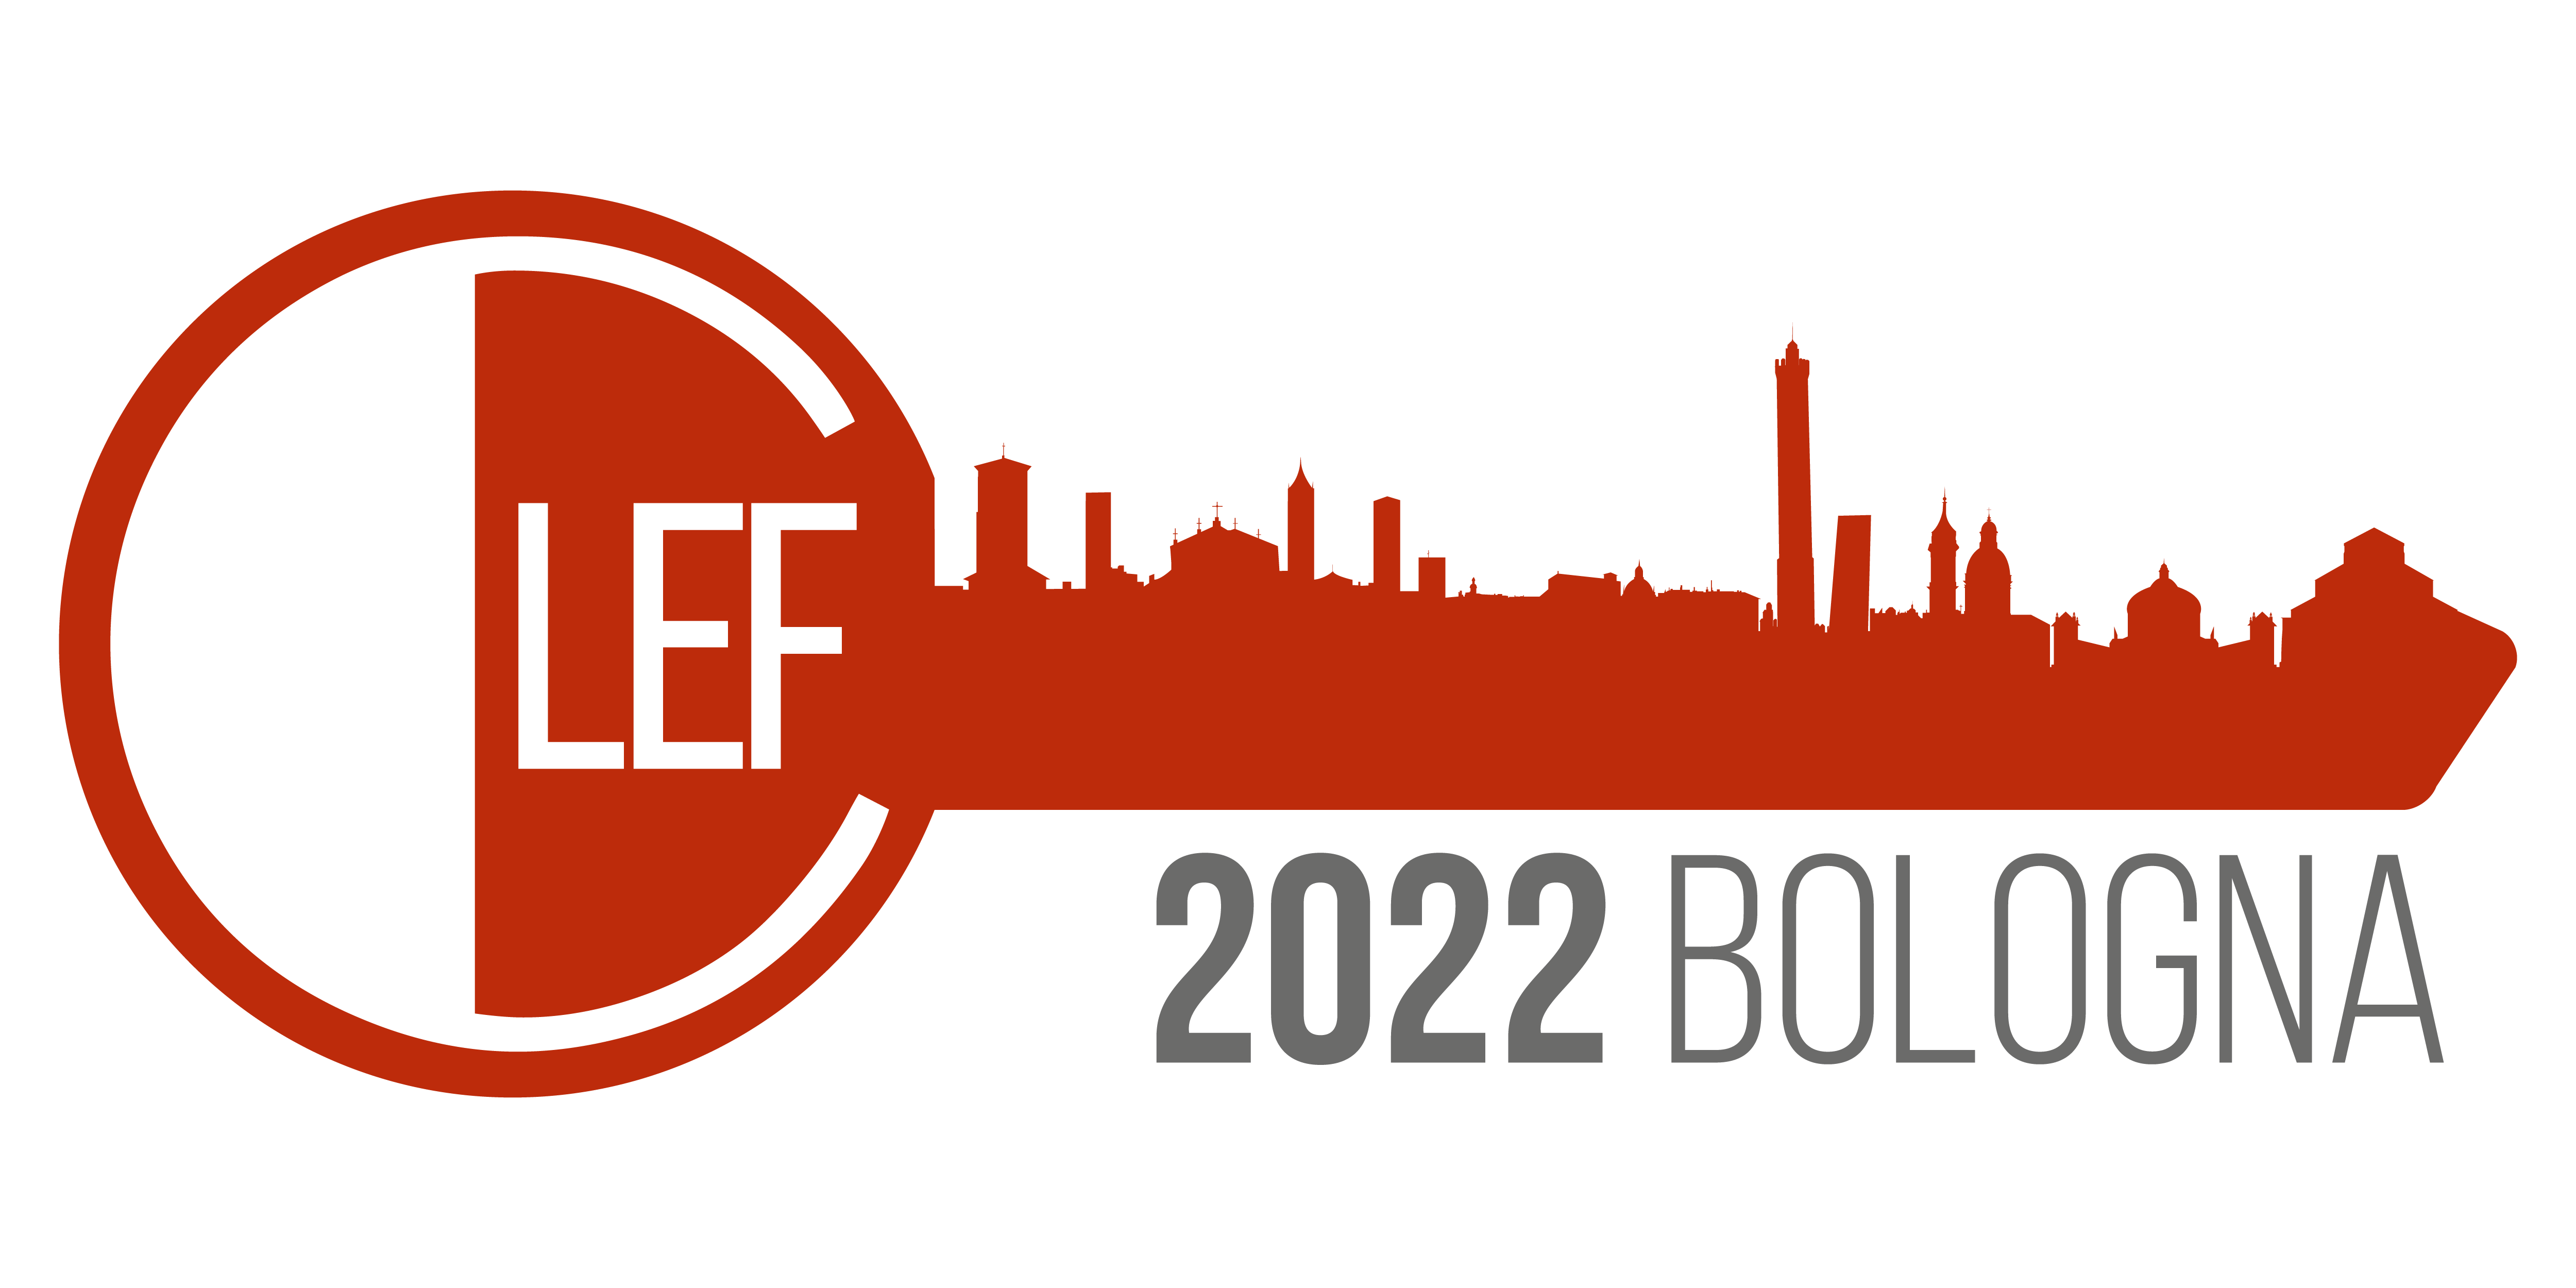 CLEF Bologna 2022 logo